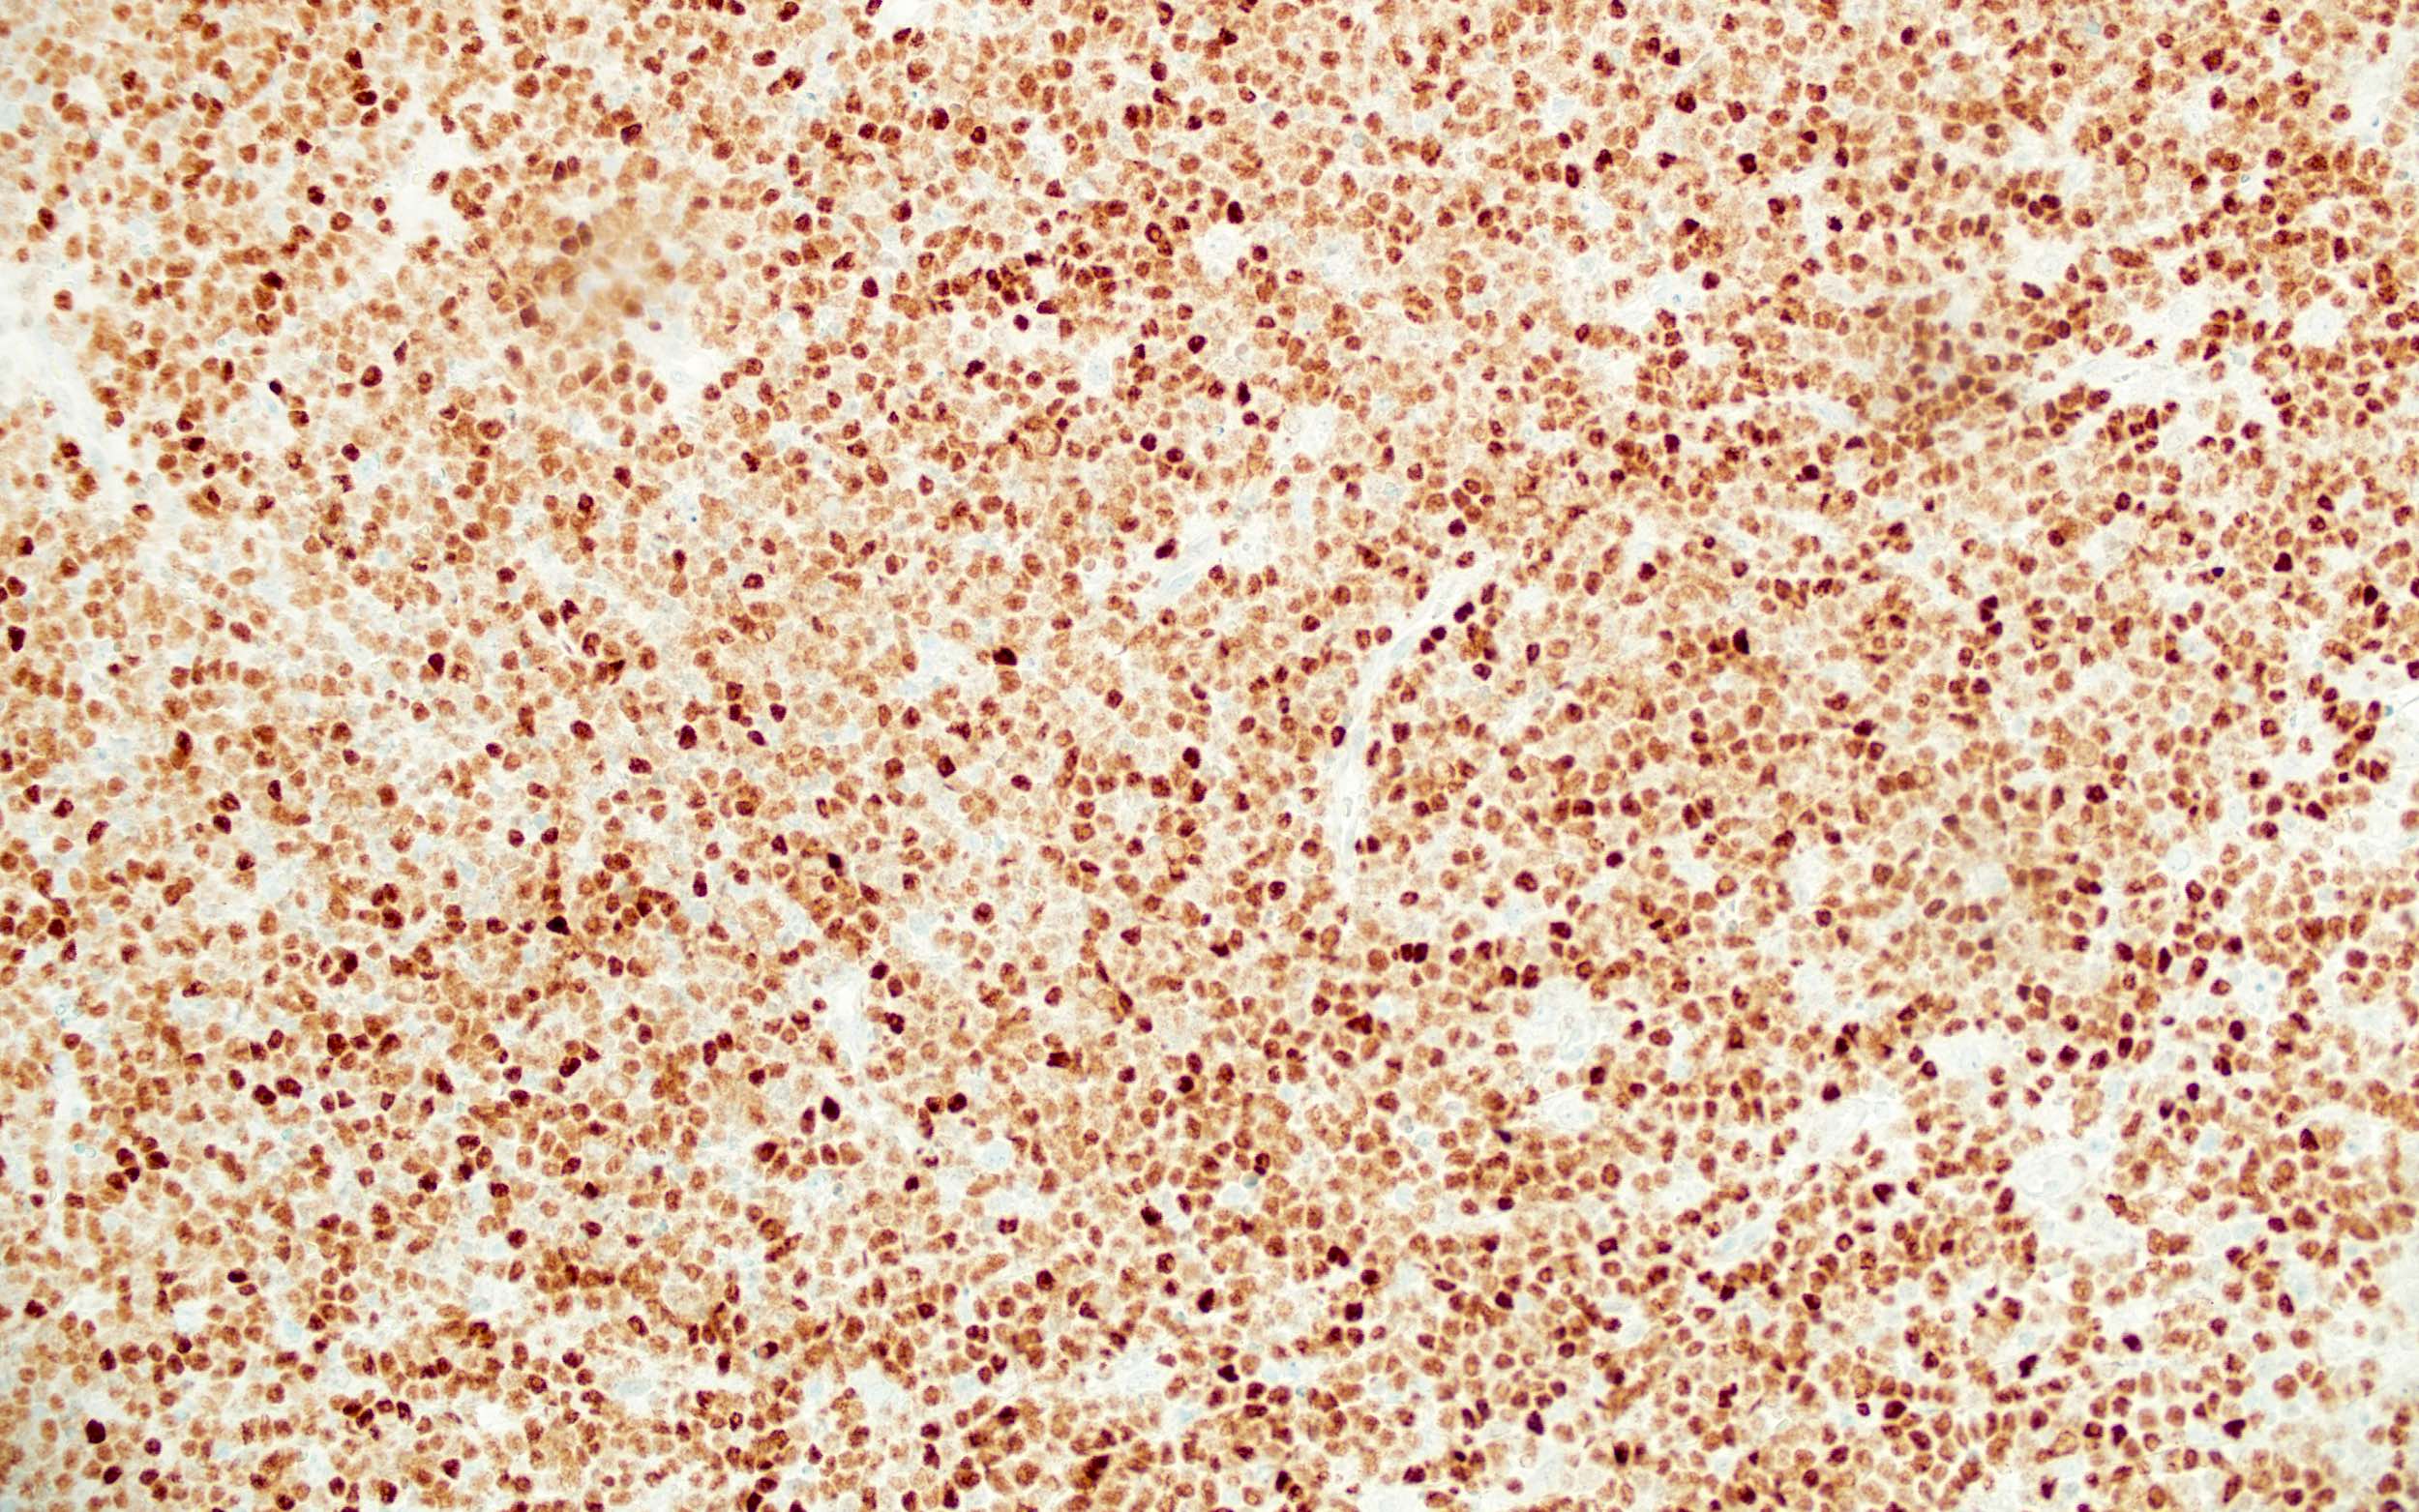 Burkitt lymphoma cells, BCL6+